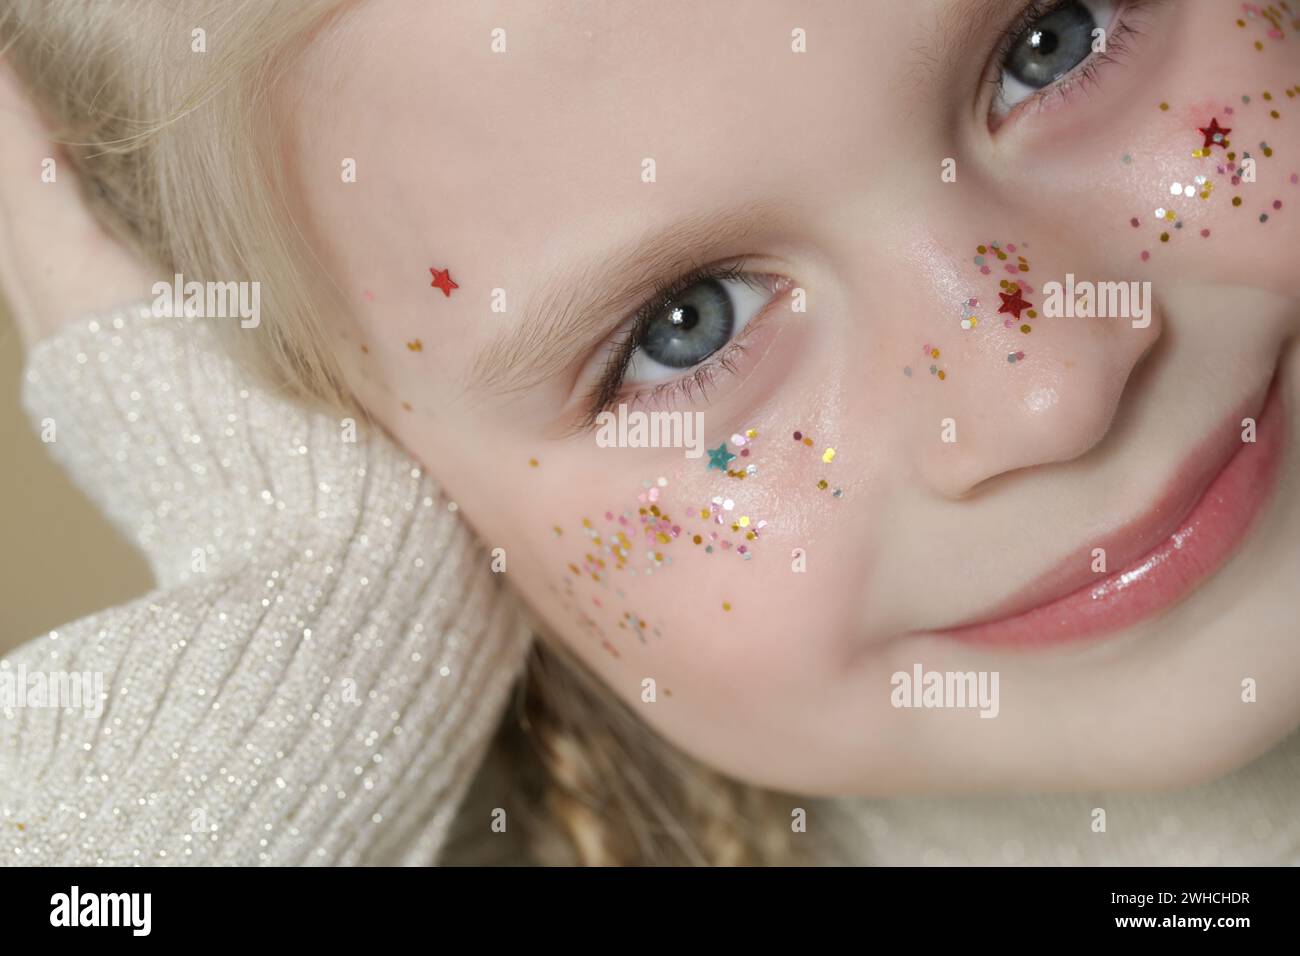 Portrait de petite fille blonde mignonne avec des yeux bleus et des paillettes sur son visage. Banque D'Images